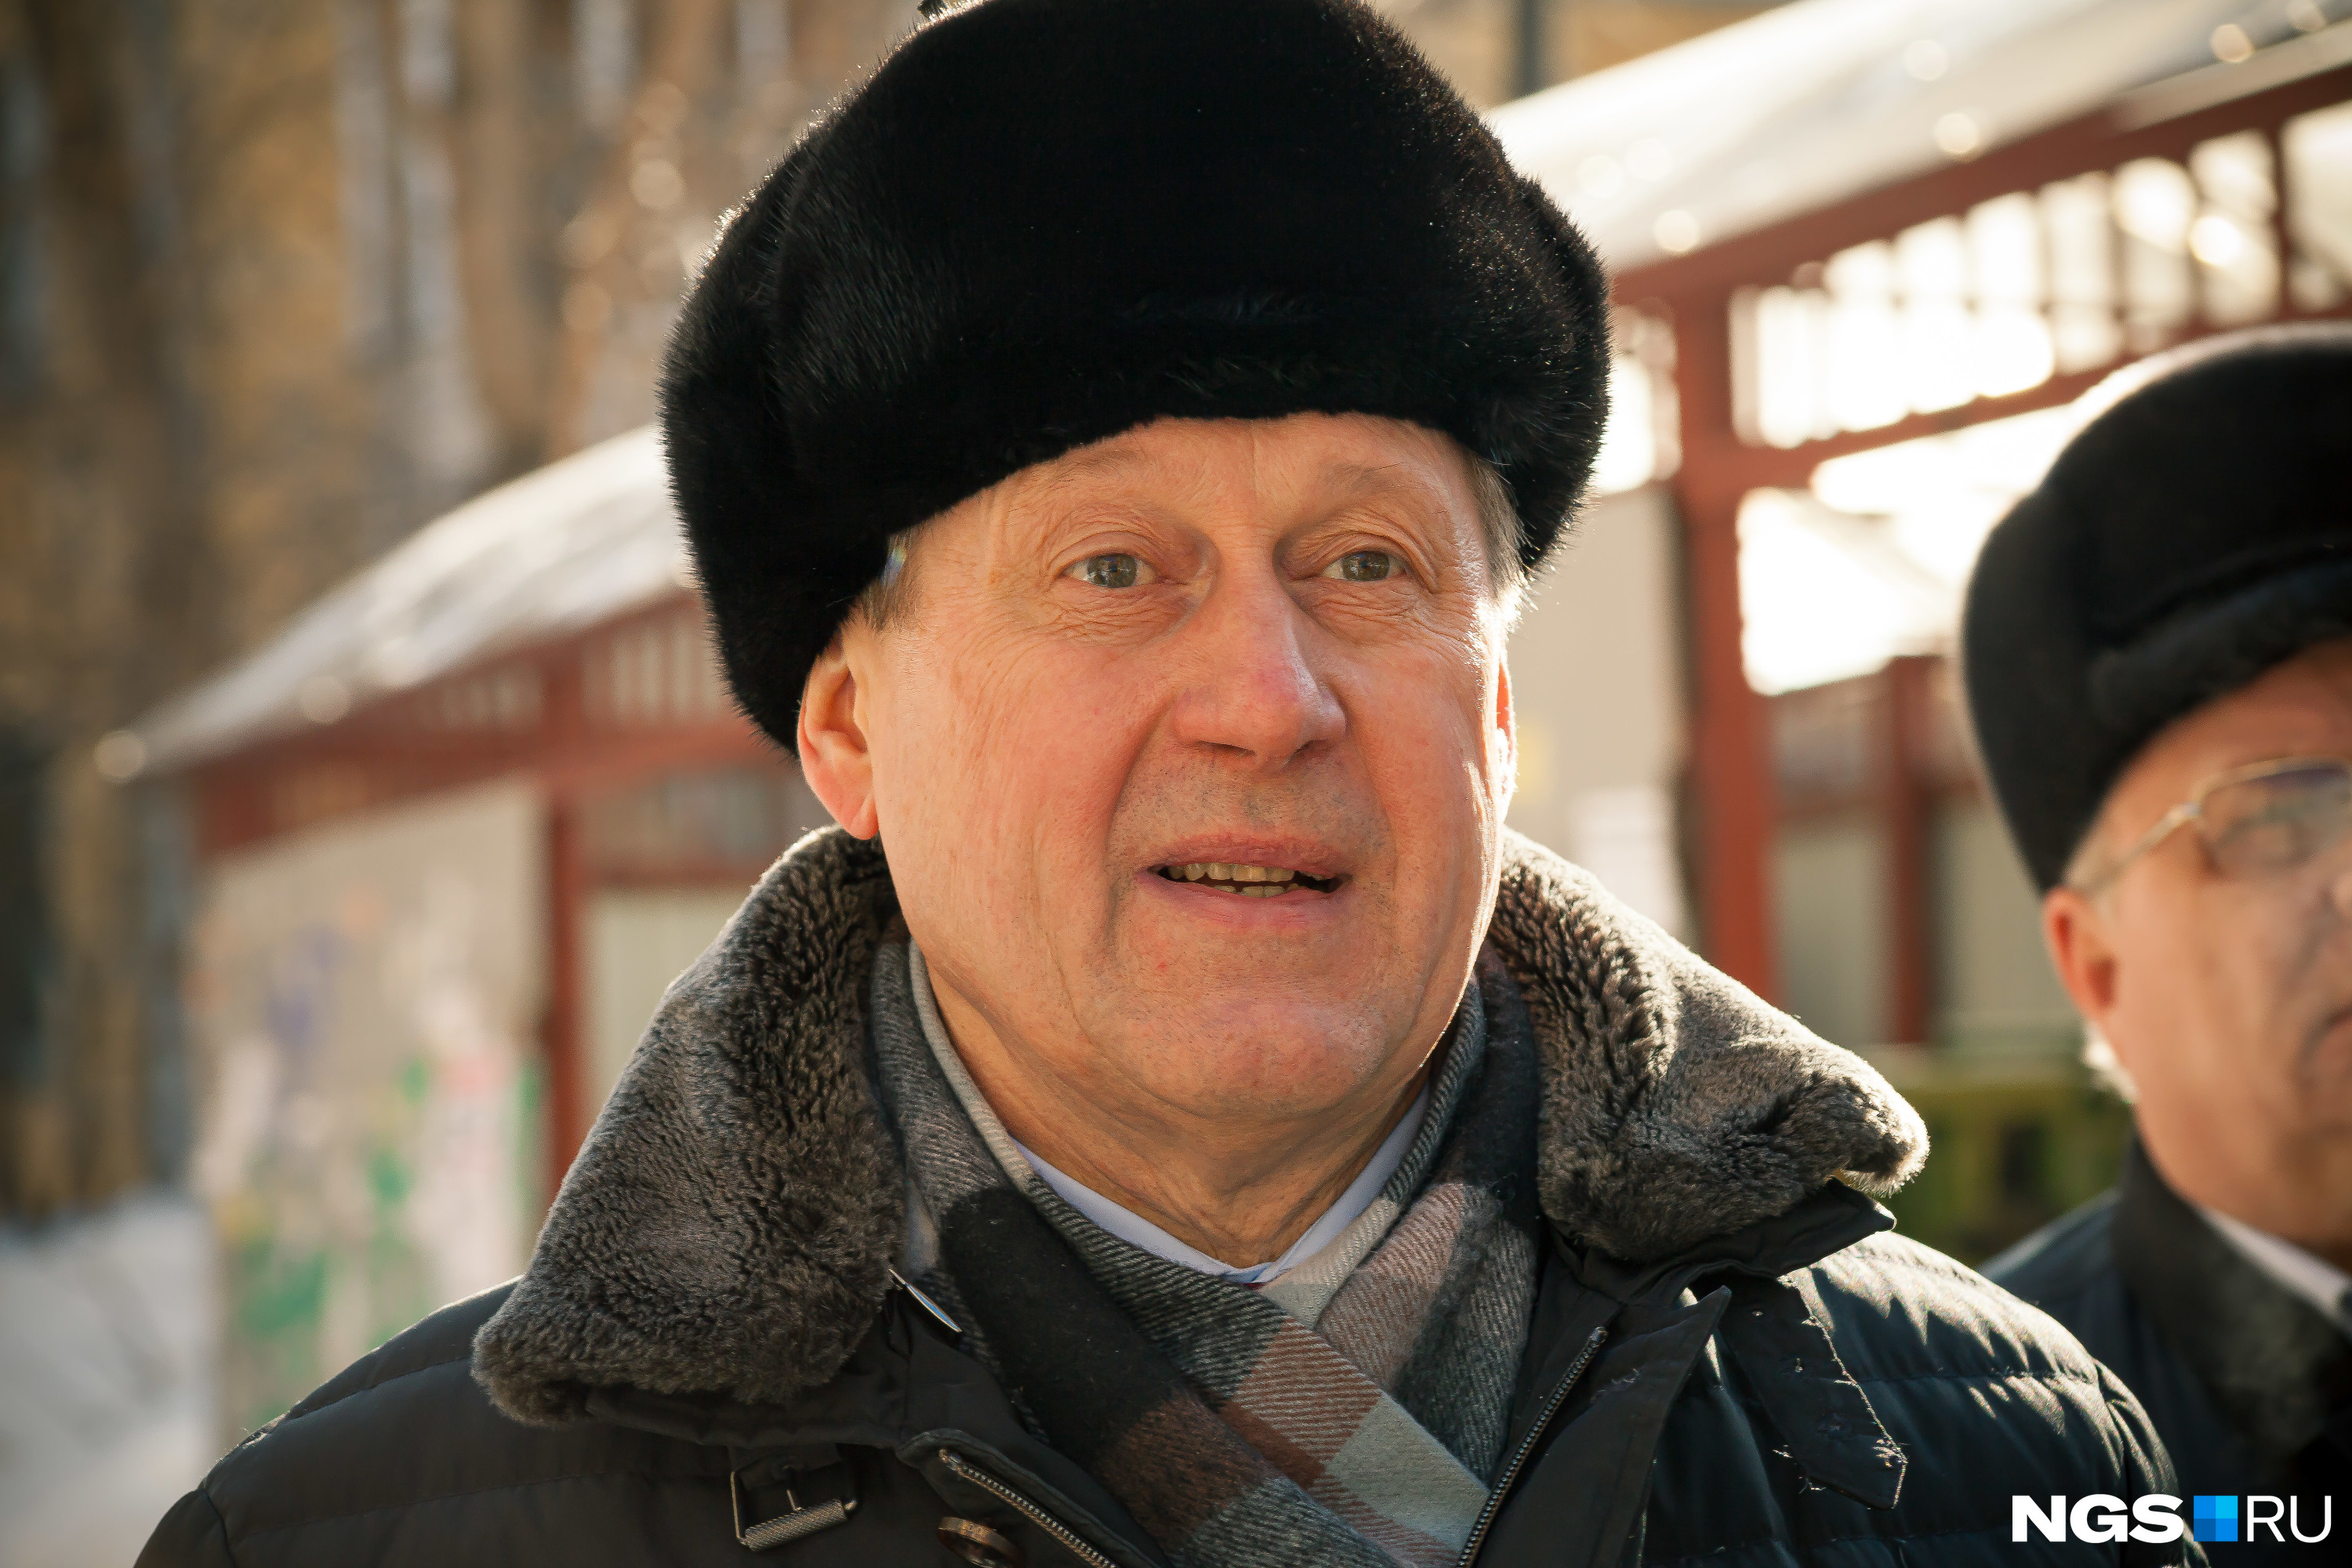 Итоги работы Анатолия Локтя на посту мэра Новосибирска, годовщина избрания  мэра Локтя 6 апреля 2021 года - 6 апреля 2021 - НГС